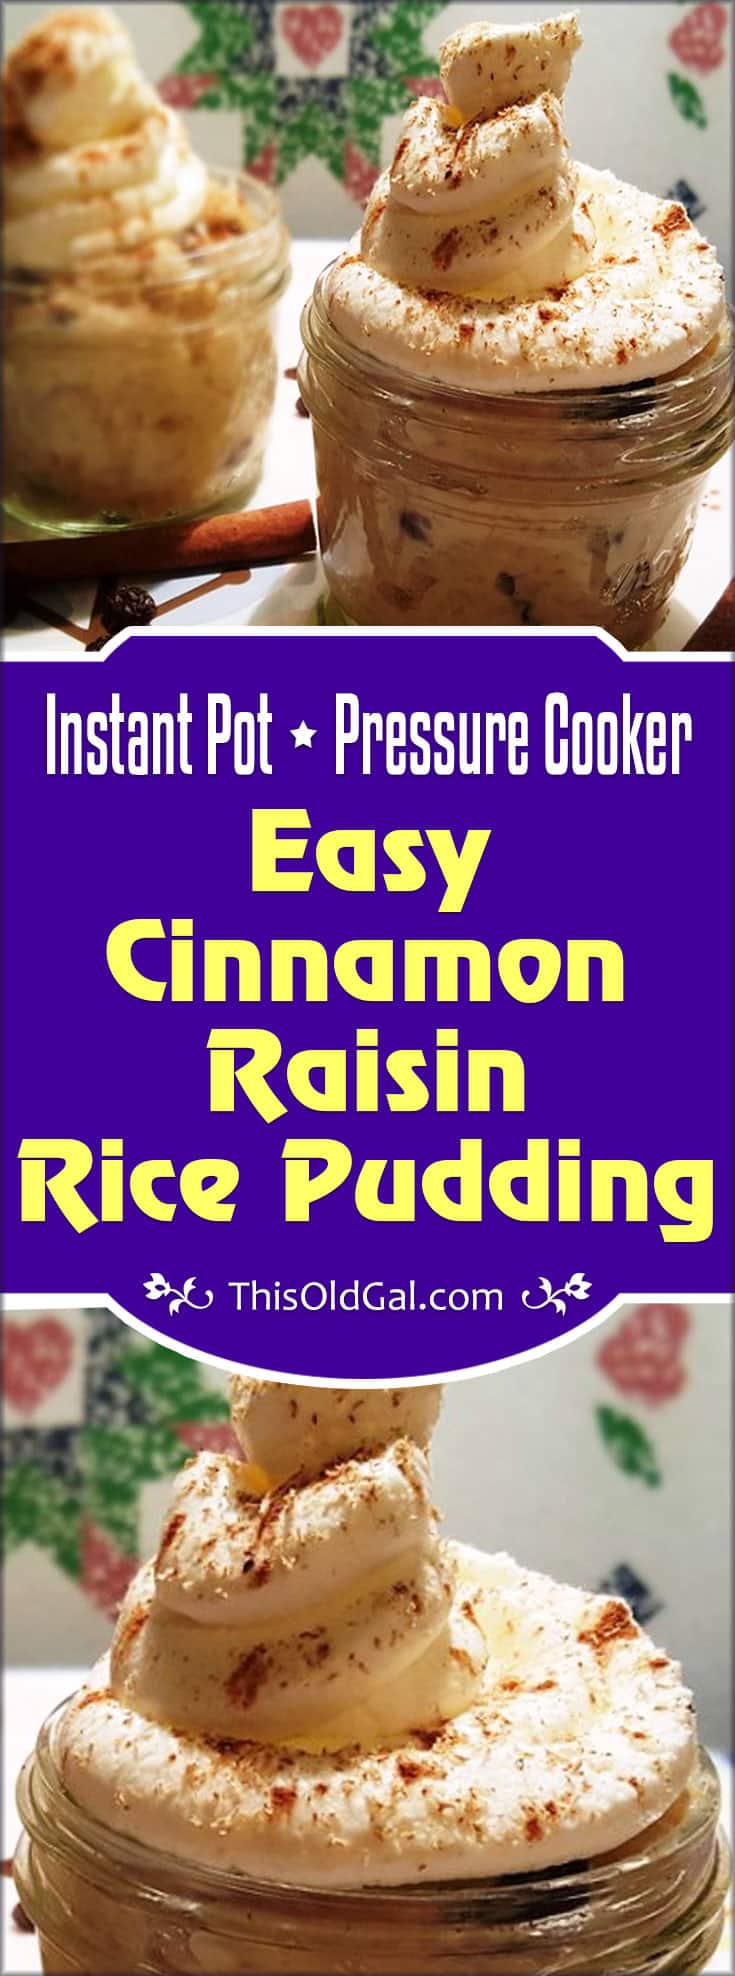 Pressure Cooker Easy Cinnamon Raisin Rice Pudding